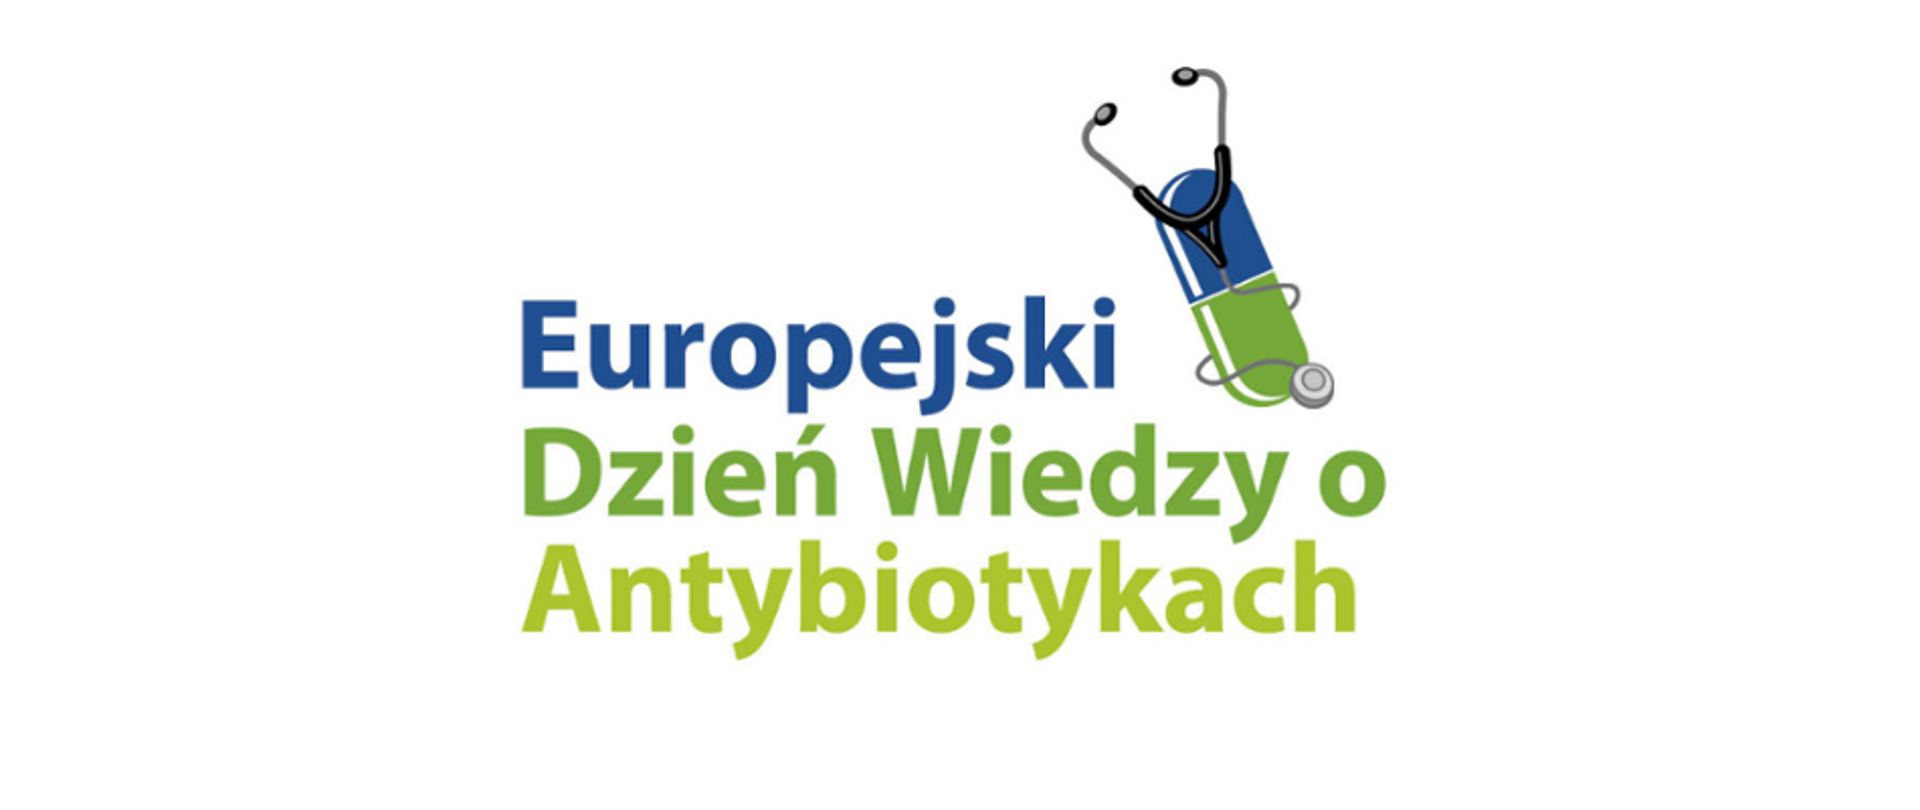 europejski dzień wiedzy o antybiotykach